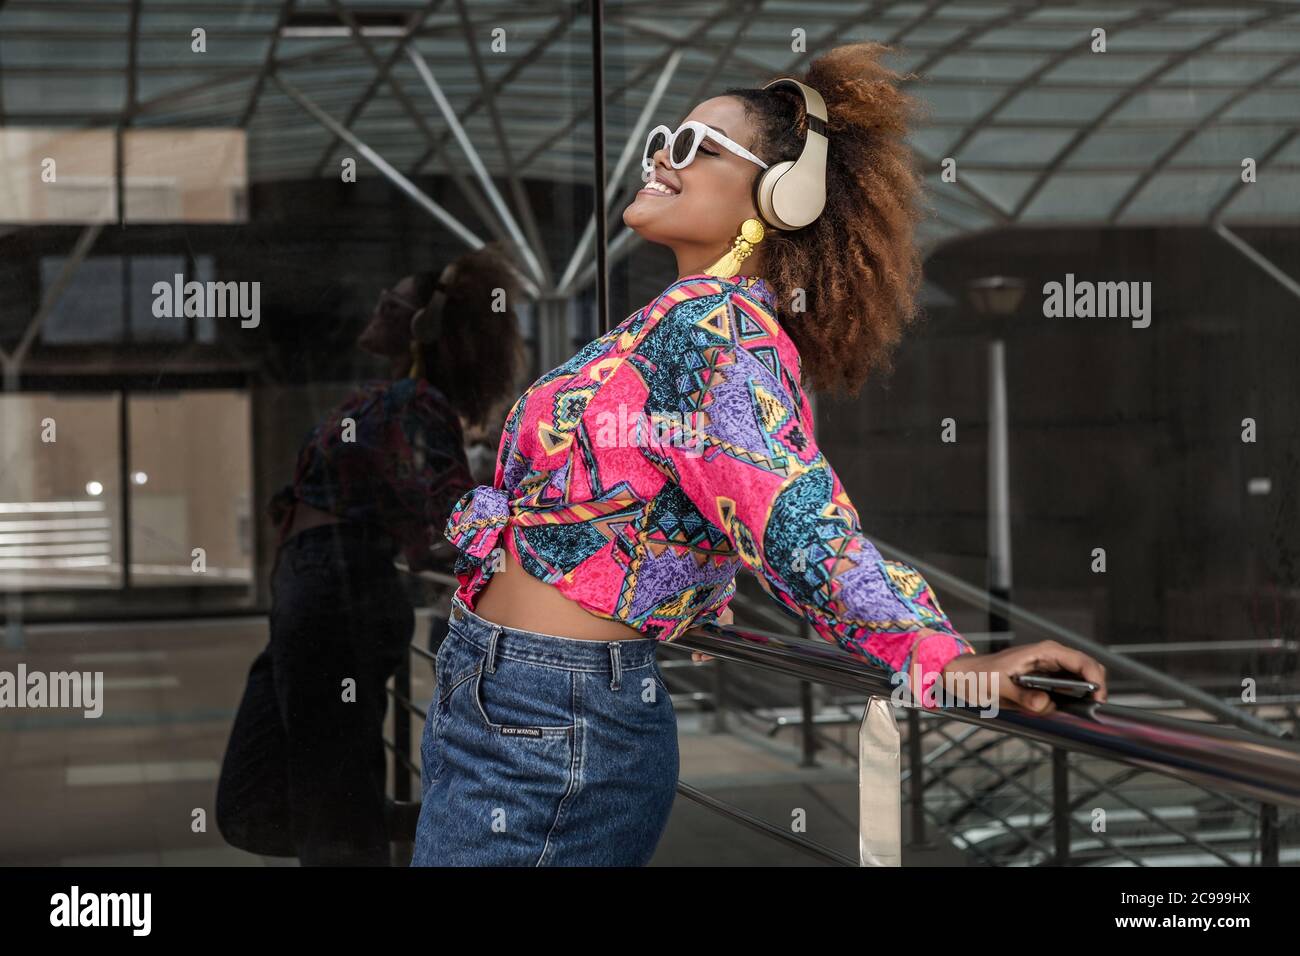 Seitenansicht des Inhalts afroamerikanische Dame in Jeans und Sonnenbrille, die Musik im schnurlosen Headset genießt, während sie mit dem Smartphone auf dem Handrai steht Stockfoto